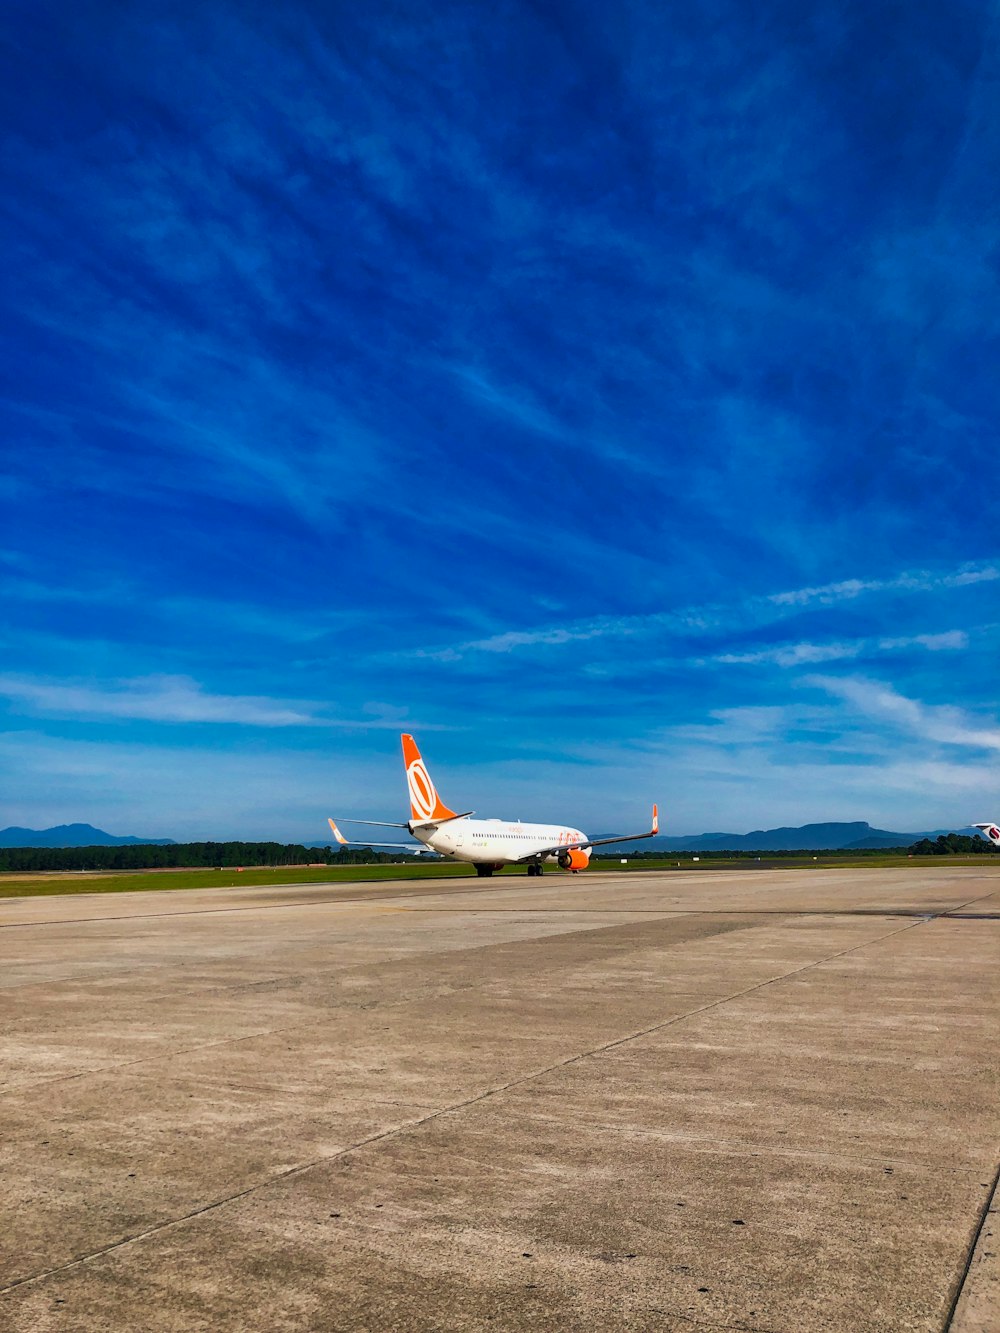 Avión de pasajeros blanco y naranja aterrizando bajo cielo azul y blanco